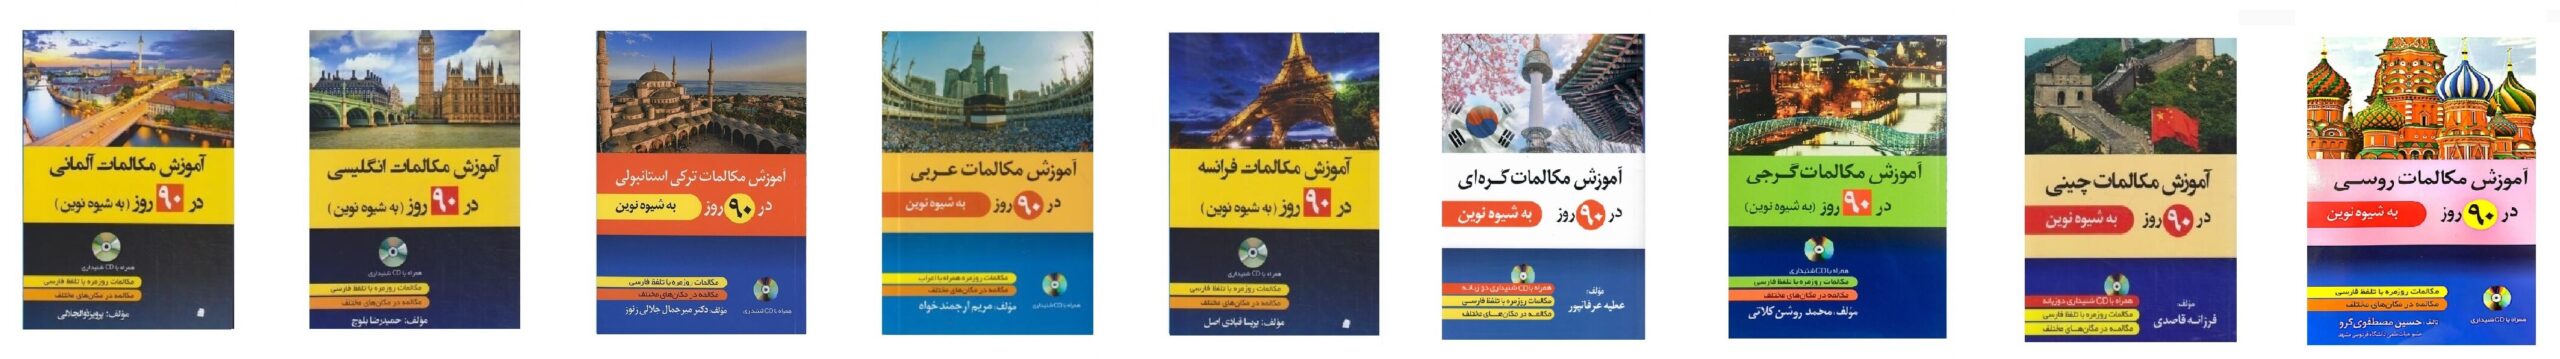 خرید کتاب زبان | زبان استور | کتاب زبان | آموزش مکالمات در 90 روز به شیوه نوین